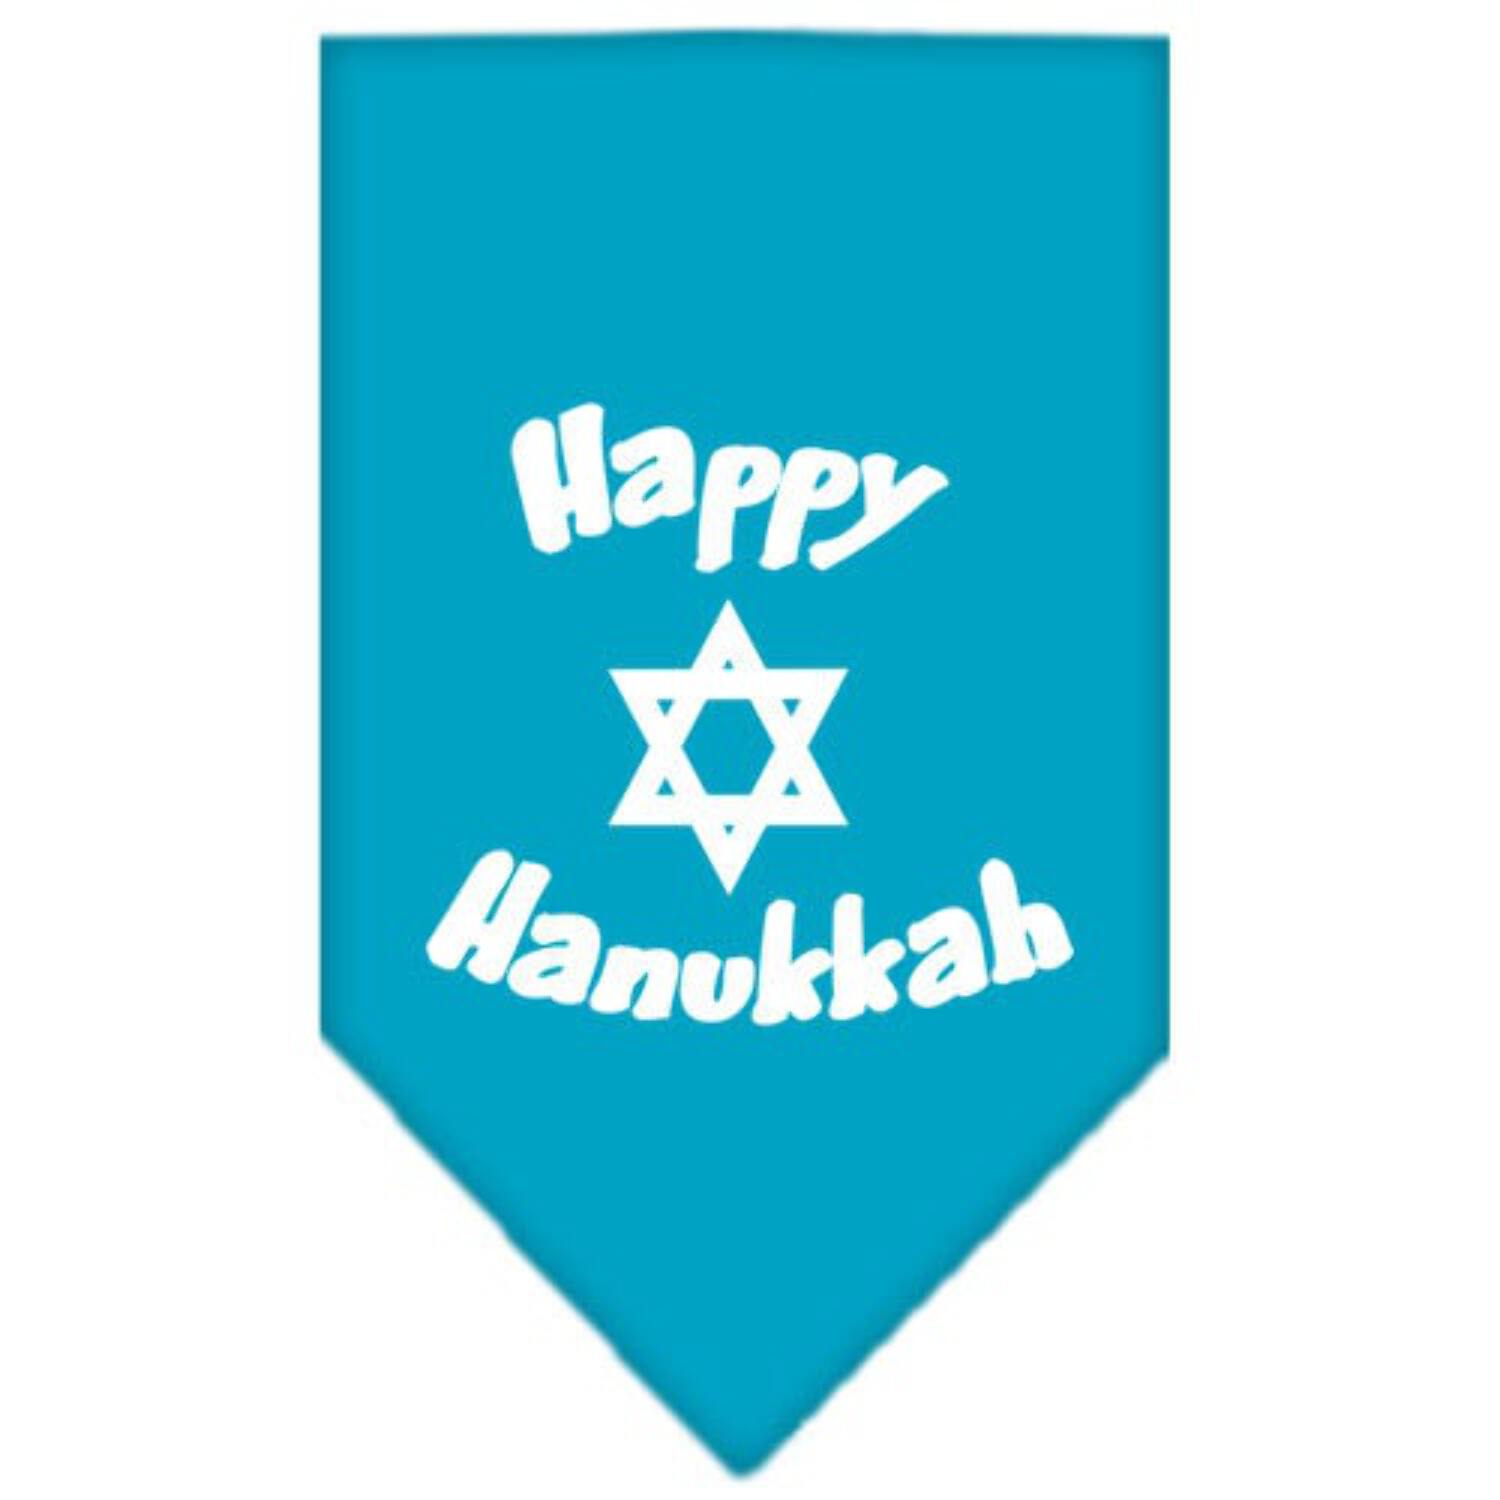 Happy Hanukkah Screen Print Bandana Navy Blue Small - image 5 of 10